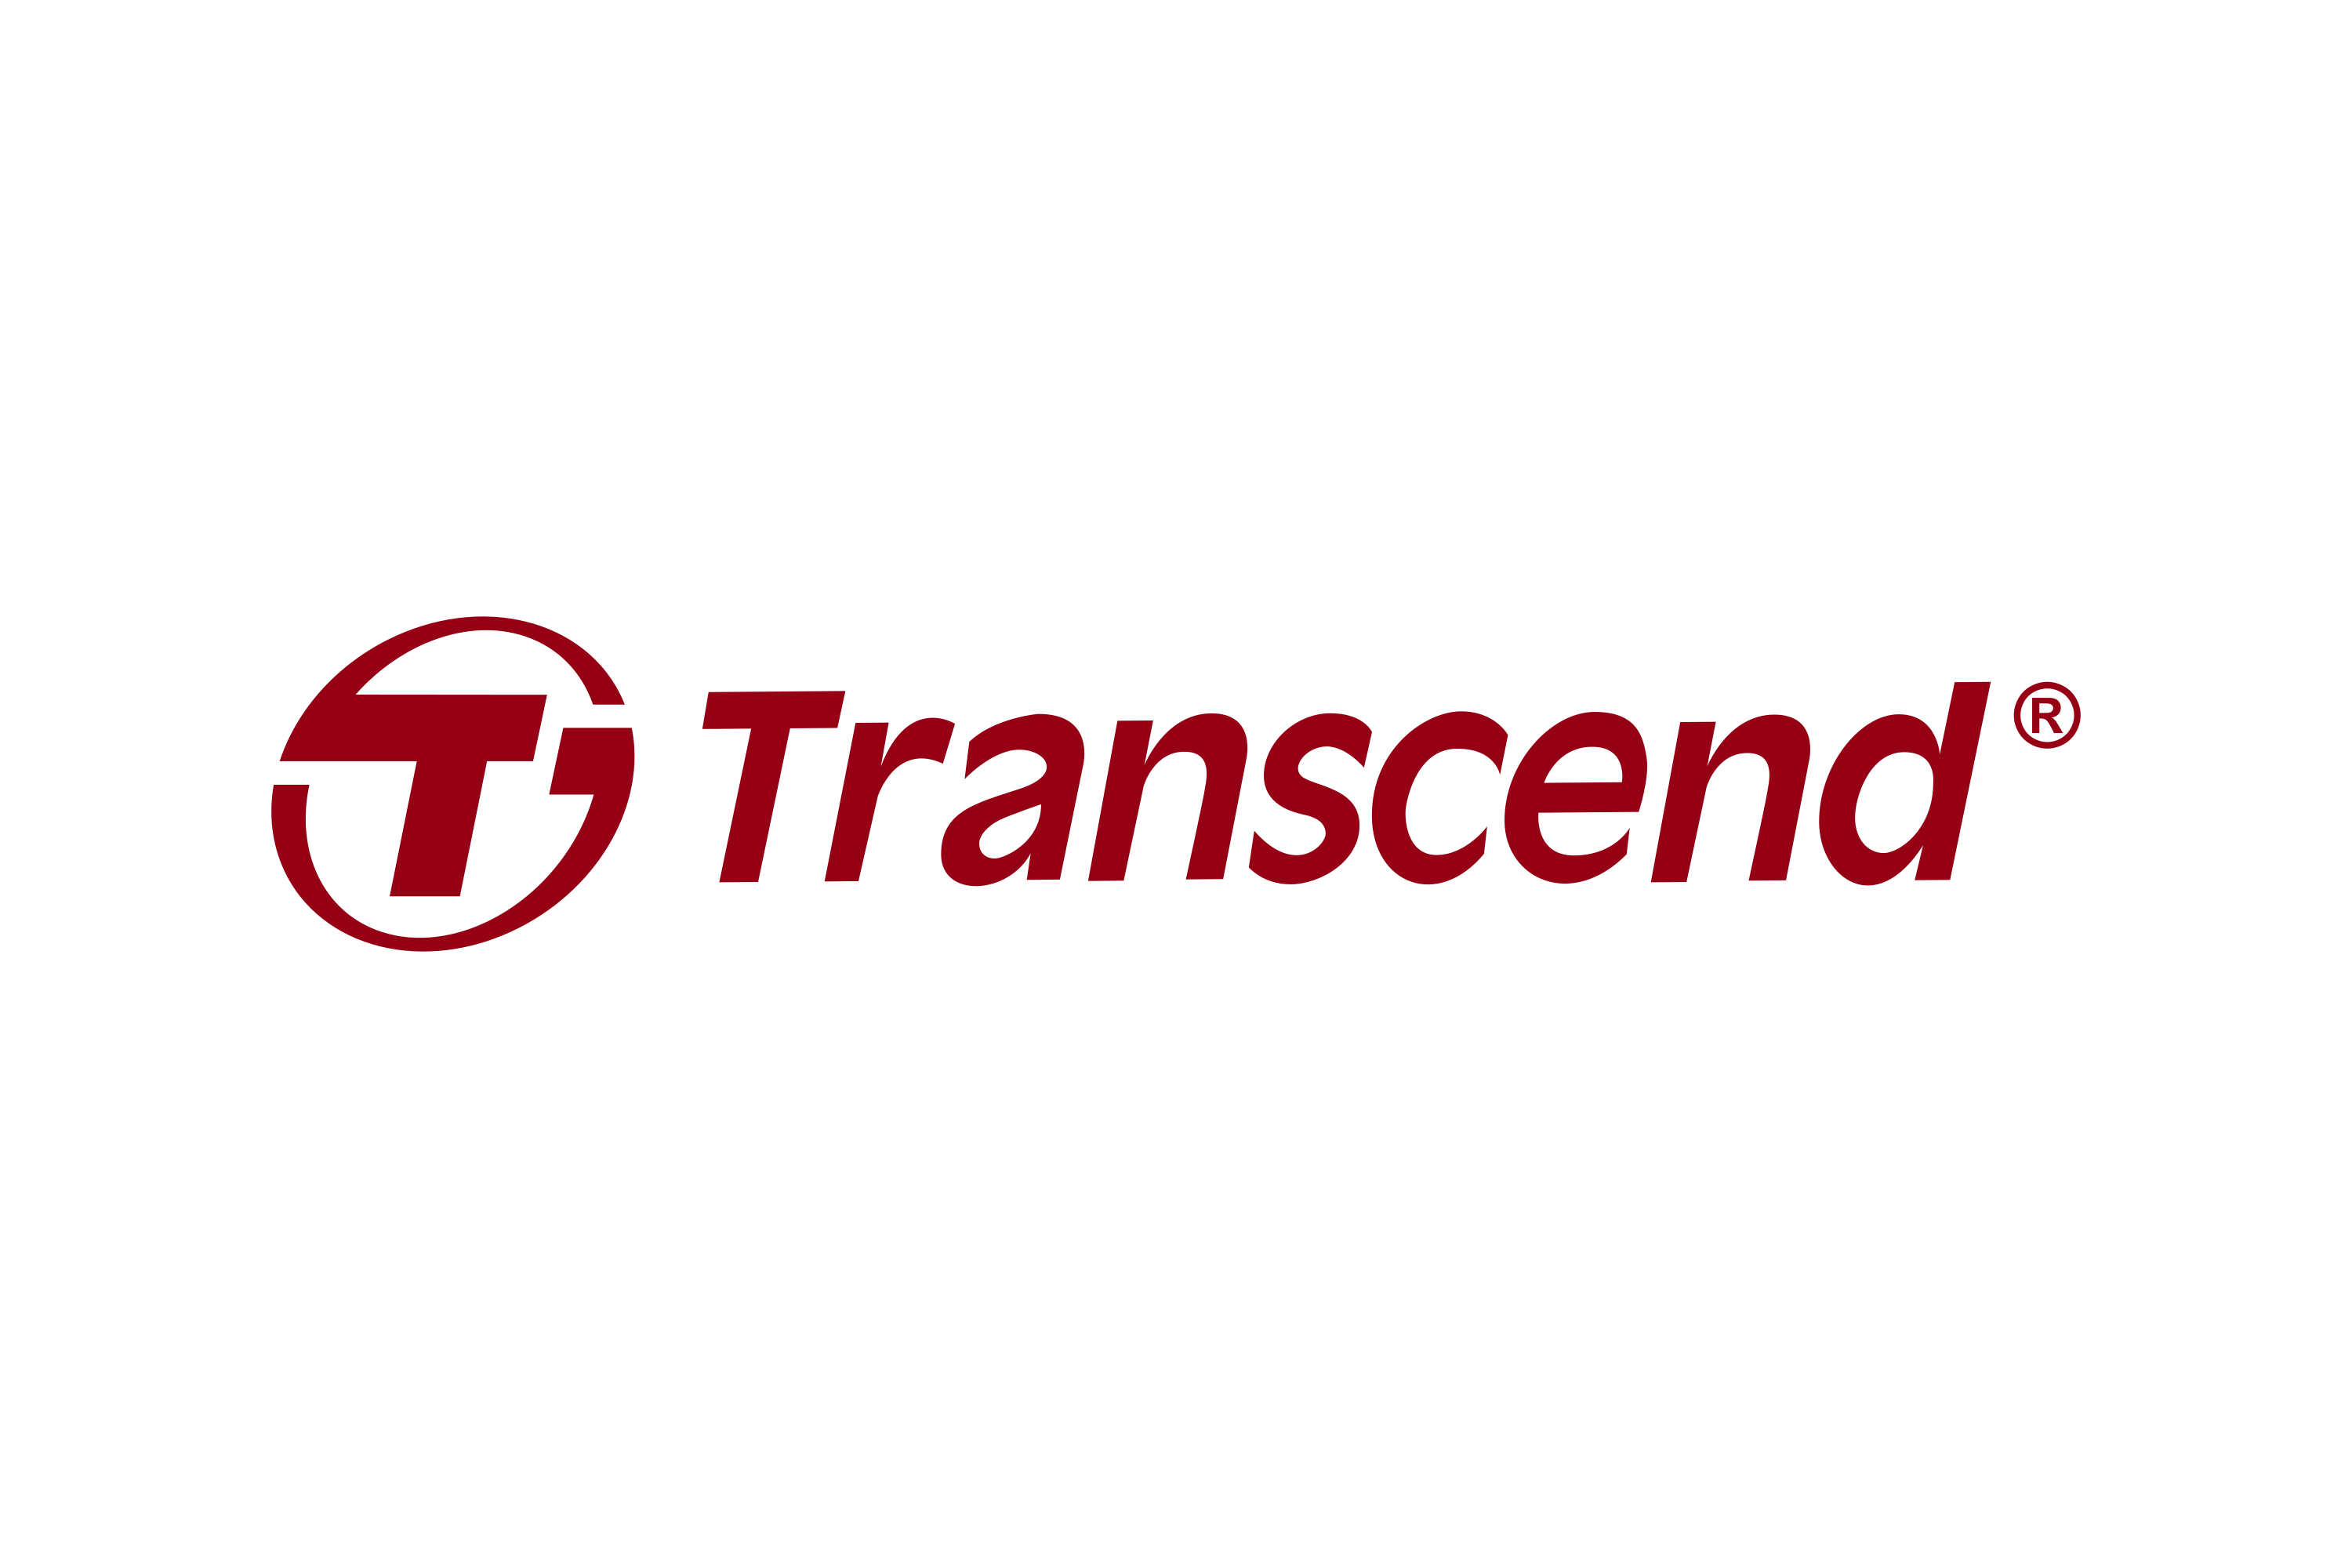 Download Transcend Information Logo in SVG Vector or PNG File Format